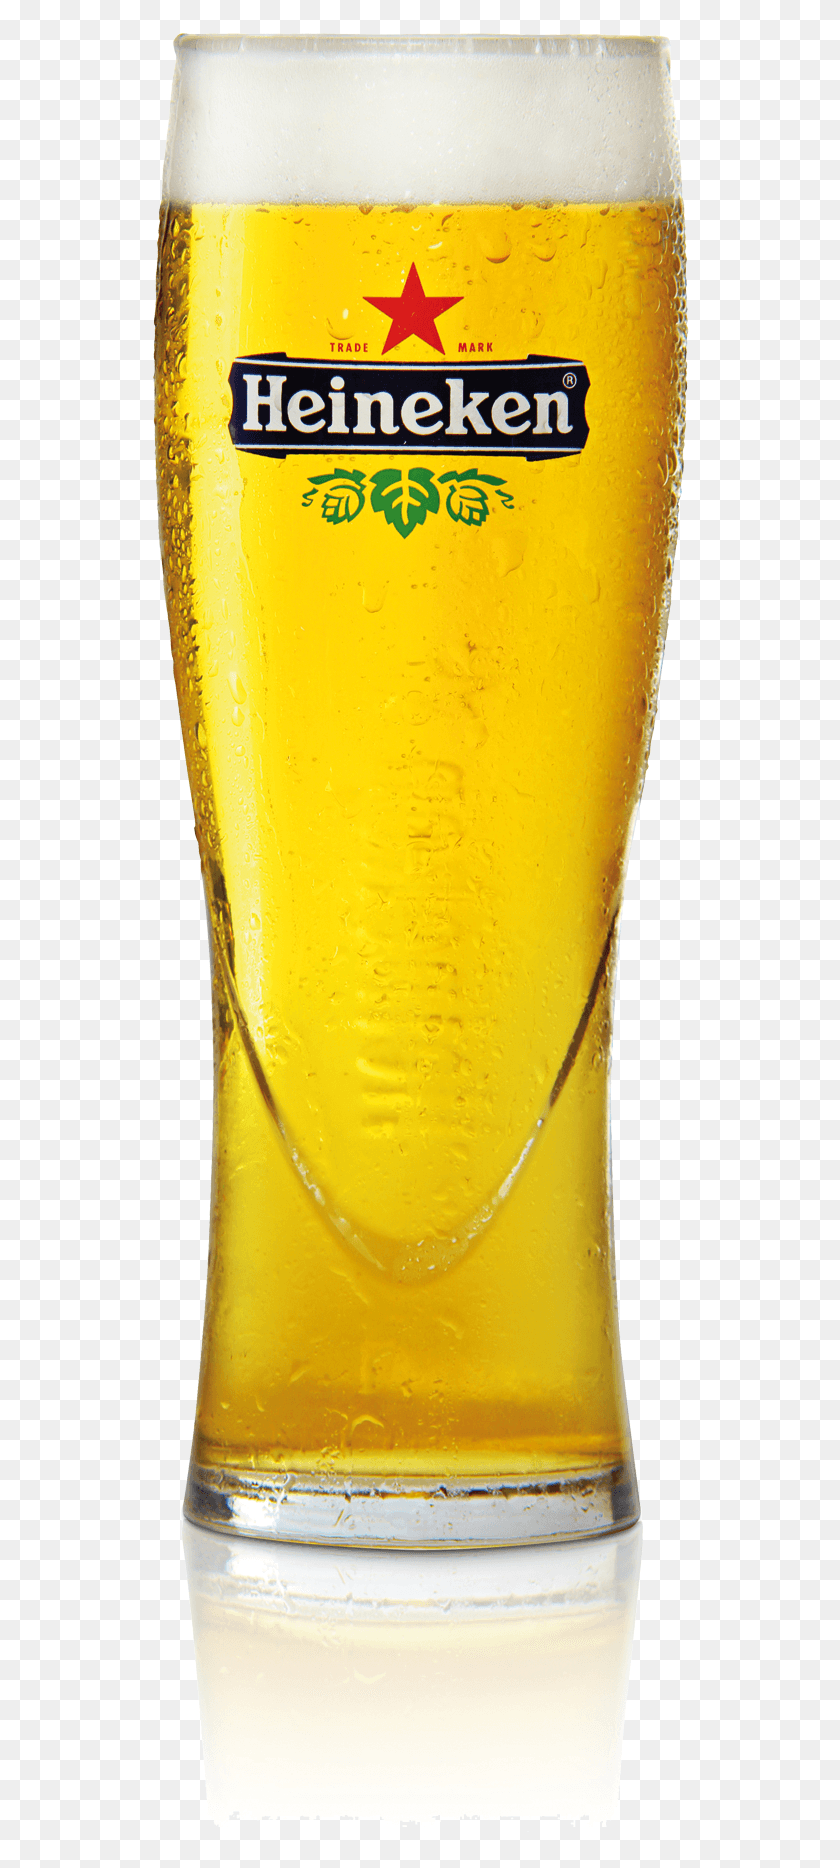 540x1808 Descargar Png Heineken Alaus Taur Vasos De Cerveza Heineken, Vaso De Cerveza, Cerveza Hd Png